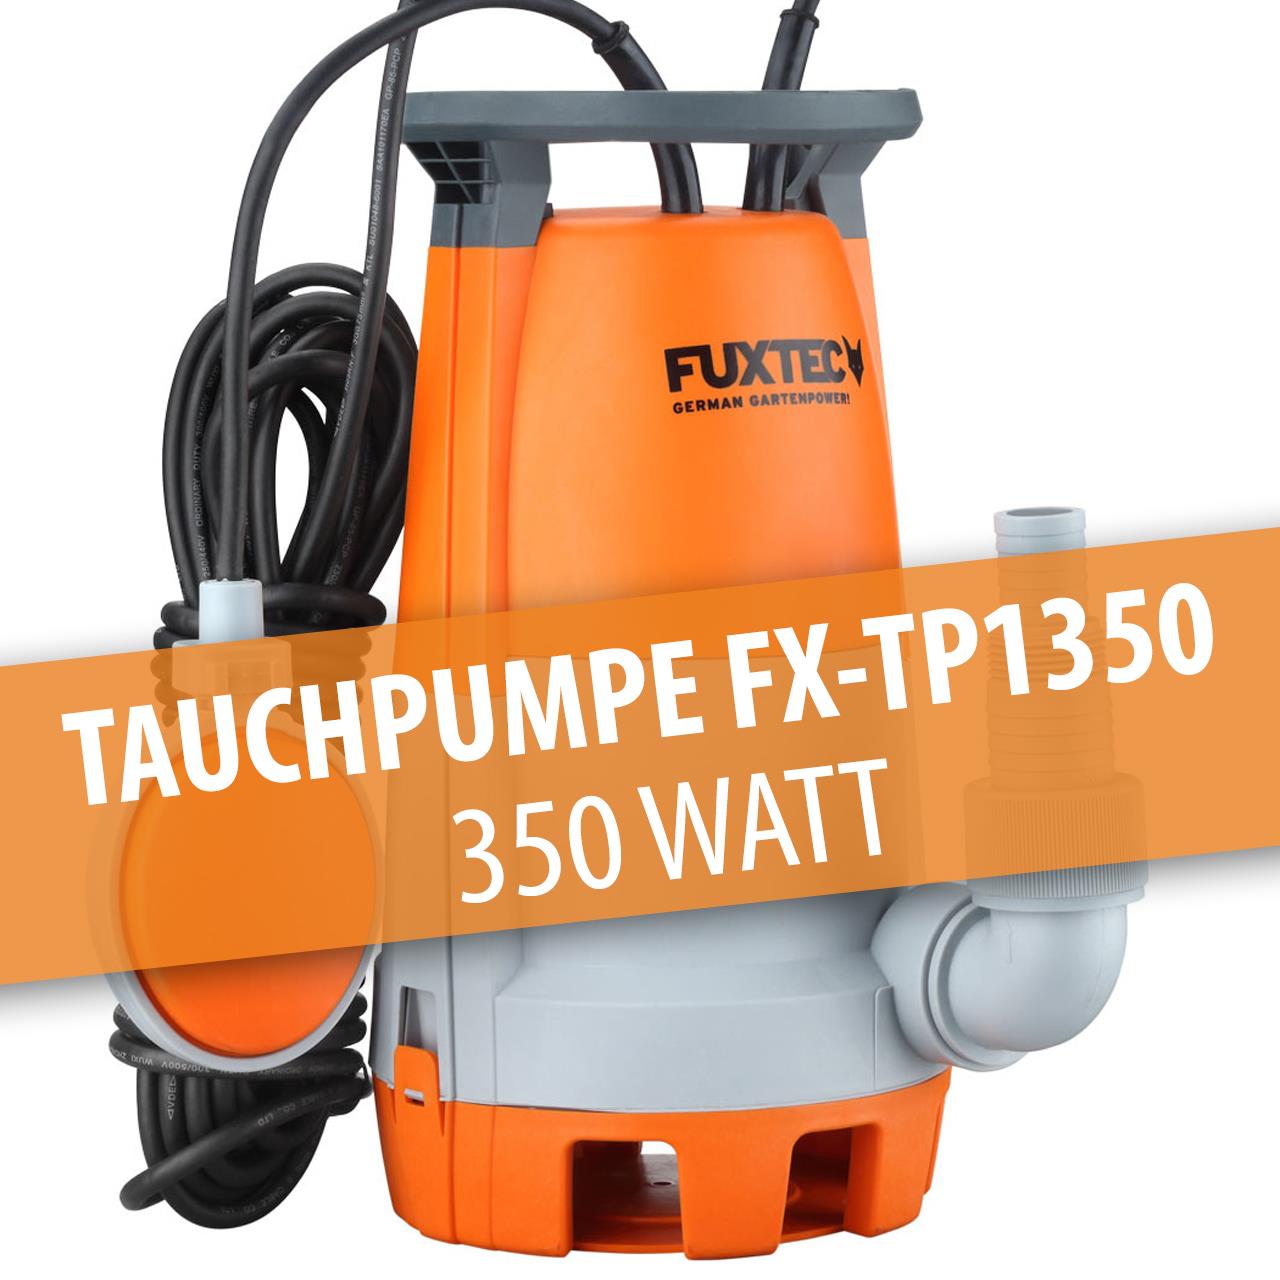 FUXTEC Tauchpumpe FX-TP1350 - 350 Watt